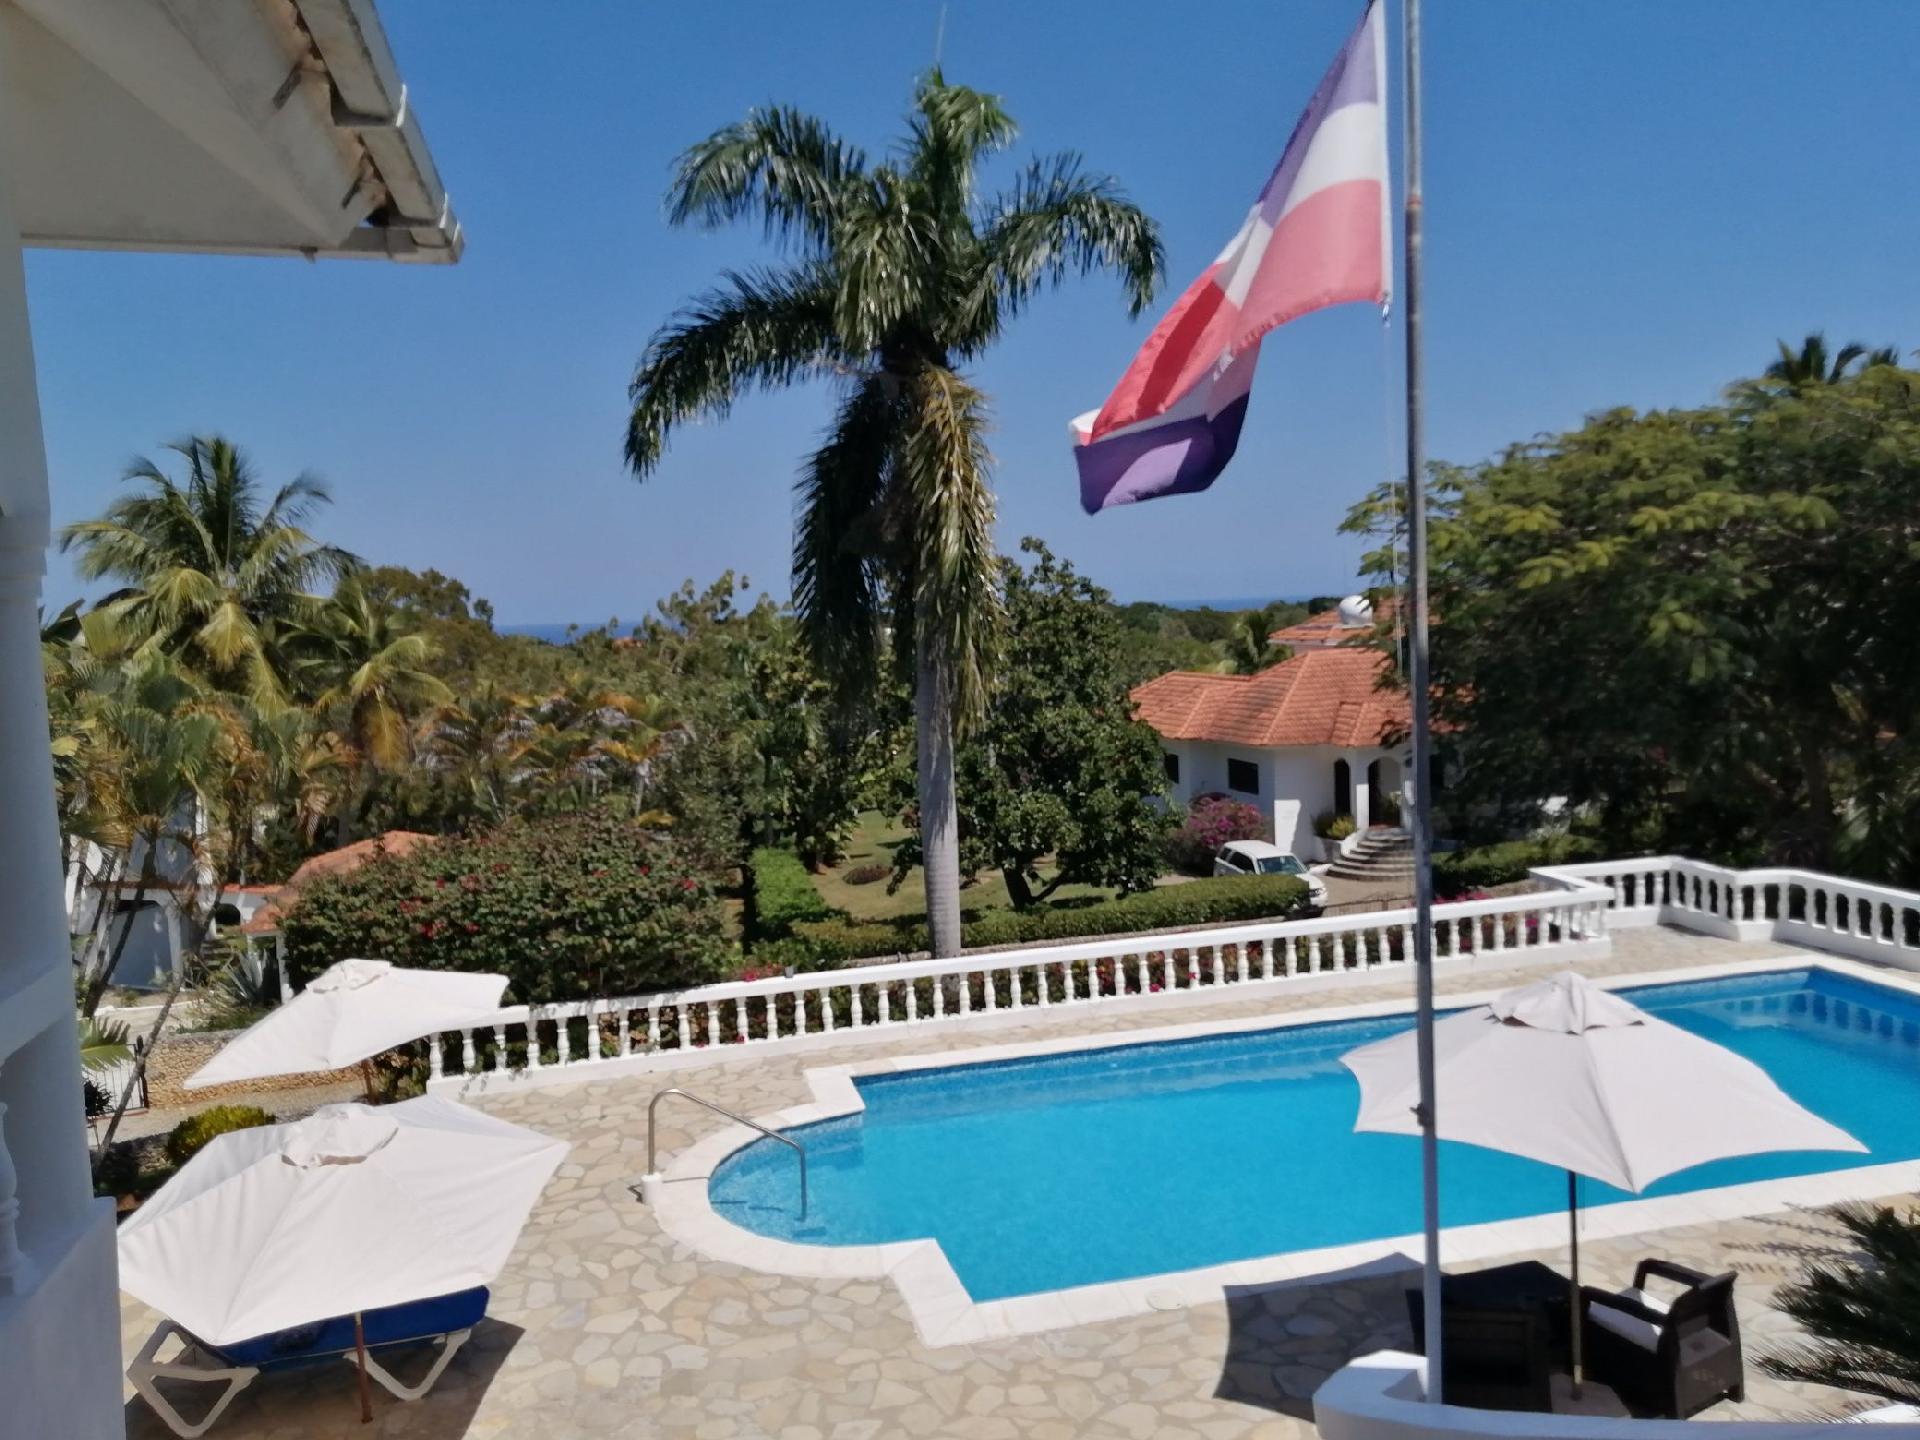 Ferienhaus mit Privatpool für 5 Personen  + 1 Ferienhaus in Mittelamerika und Karibik